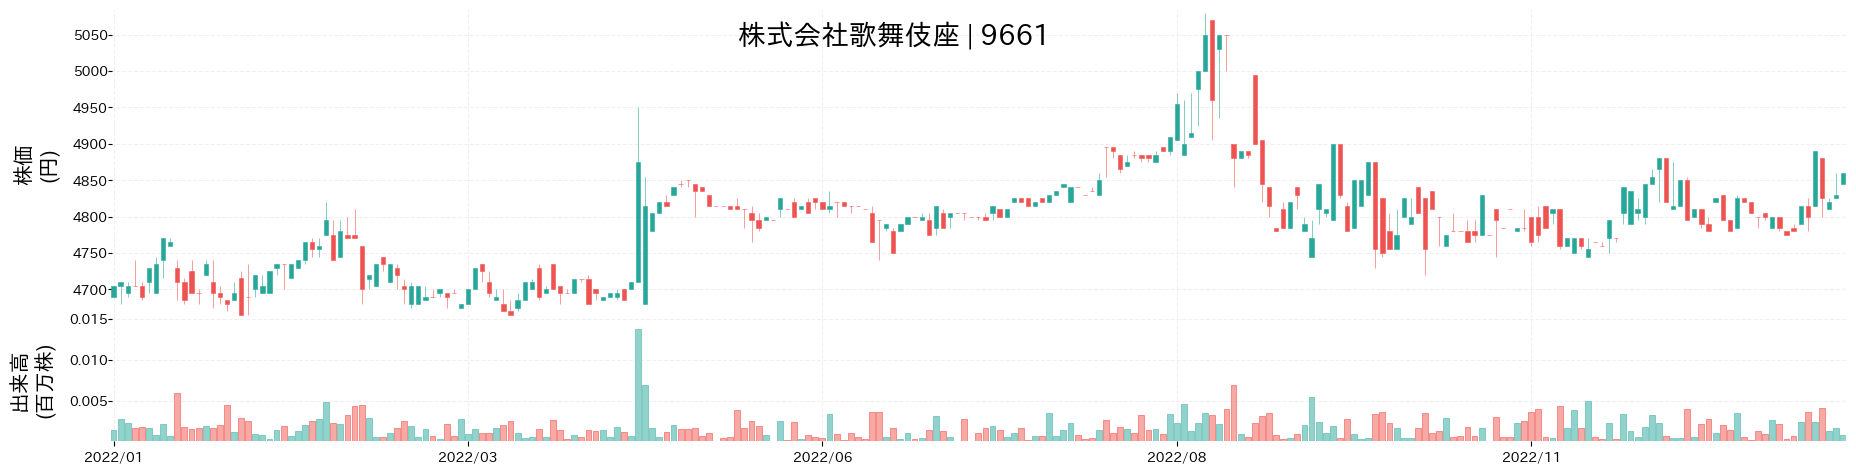 歌舞伎座の株価推移(2022)